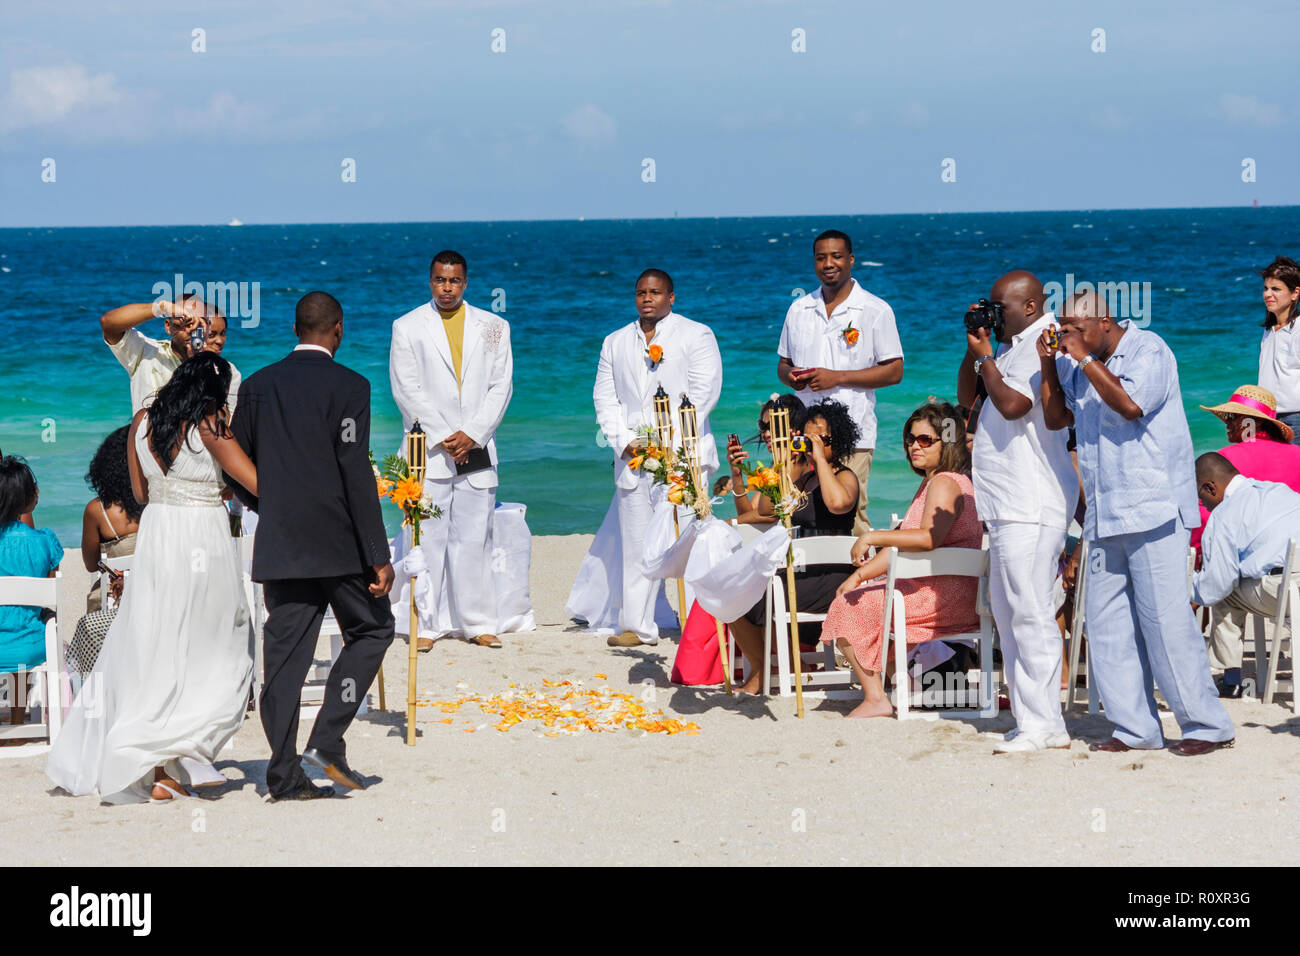 Miami Beach Floride, Océan Atlantique, eau, plage publique, bord de mer, mariage de destination, cérémonie, homme noir hommes, femme femmes, couple, invité, groom, b Banque D'Images